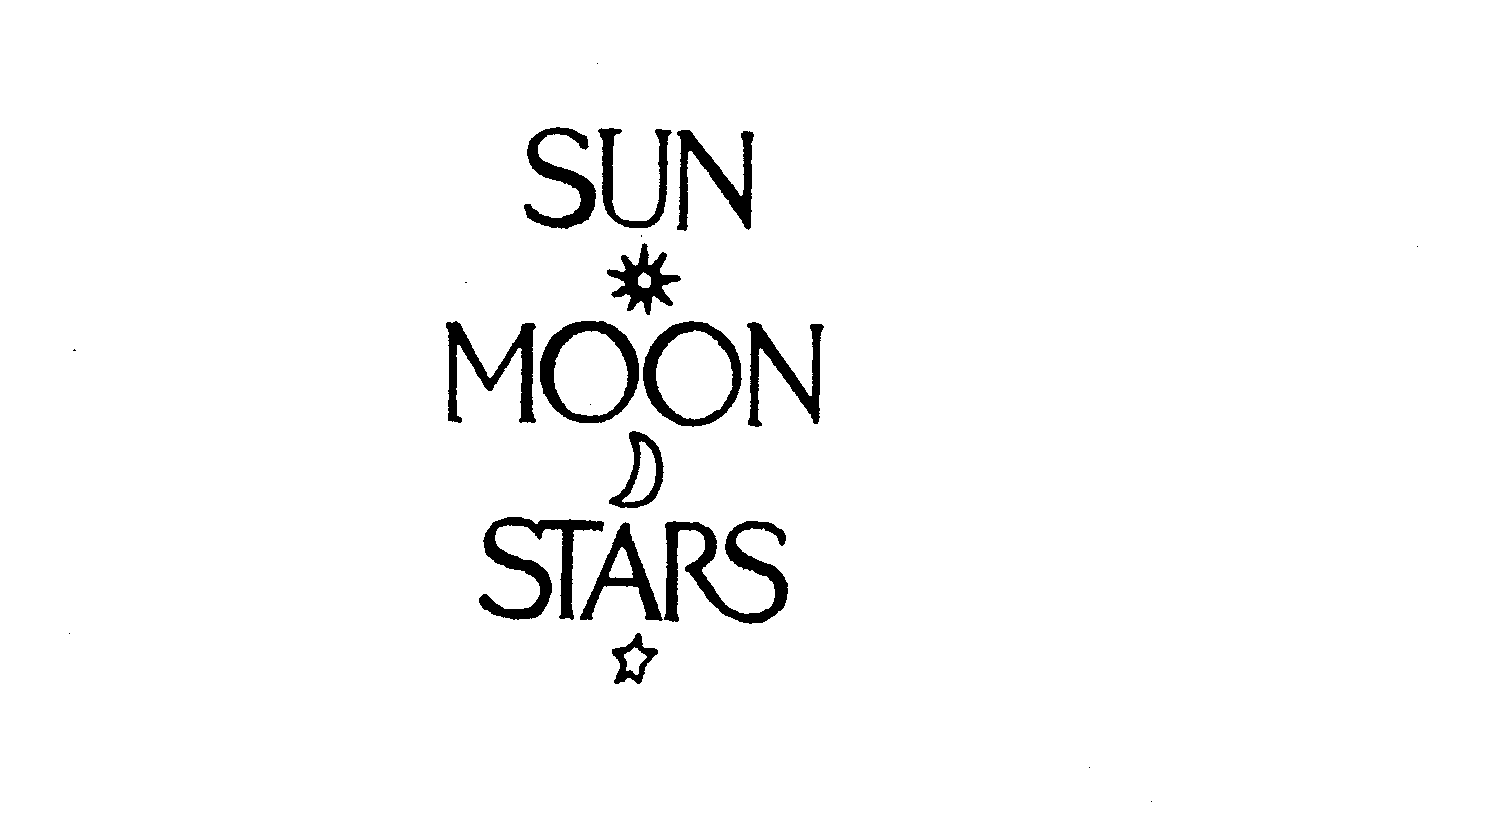 SUN MOON STARS